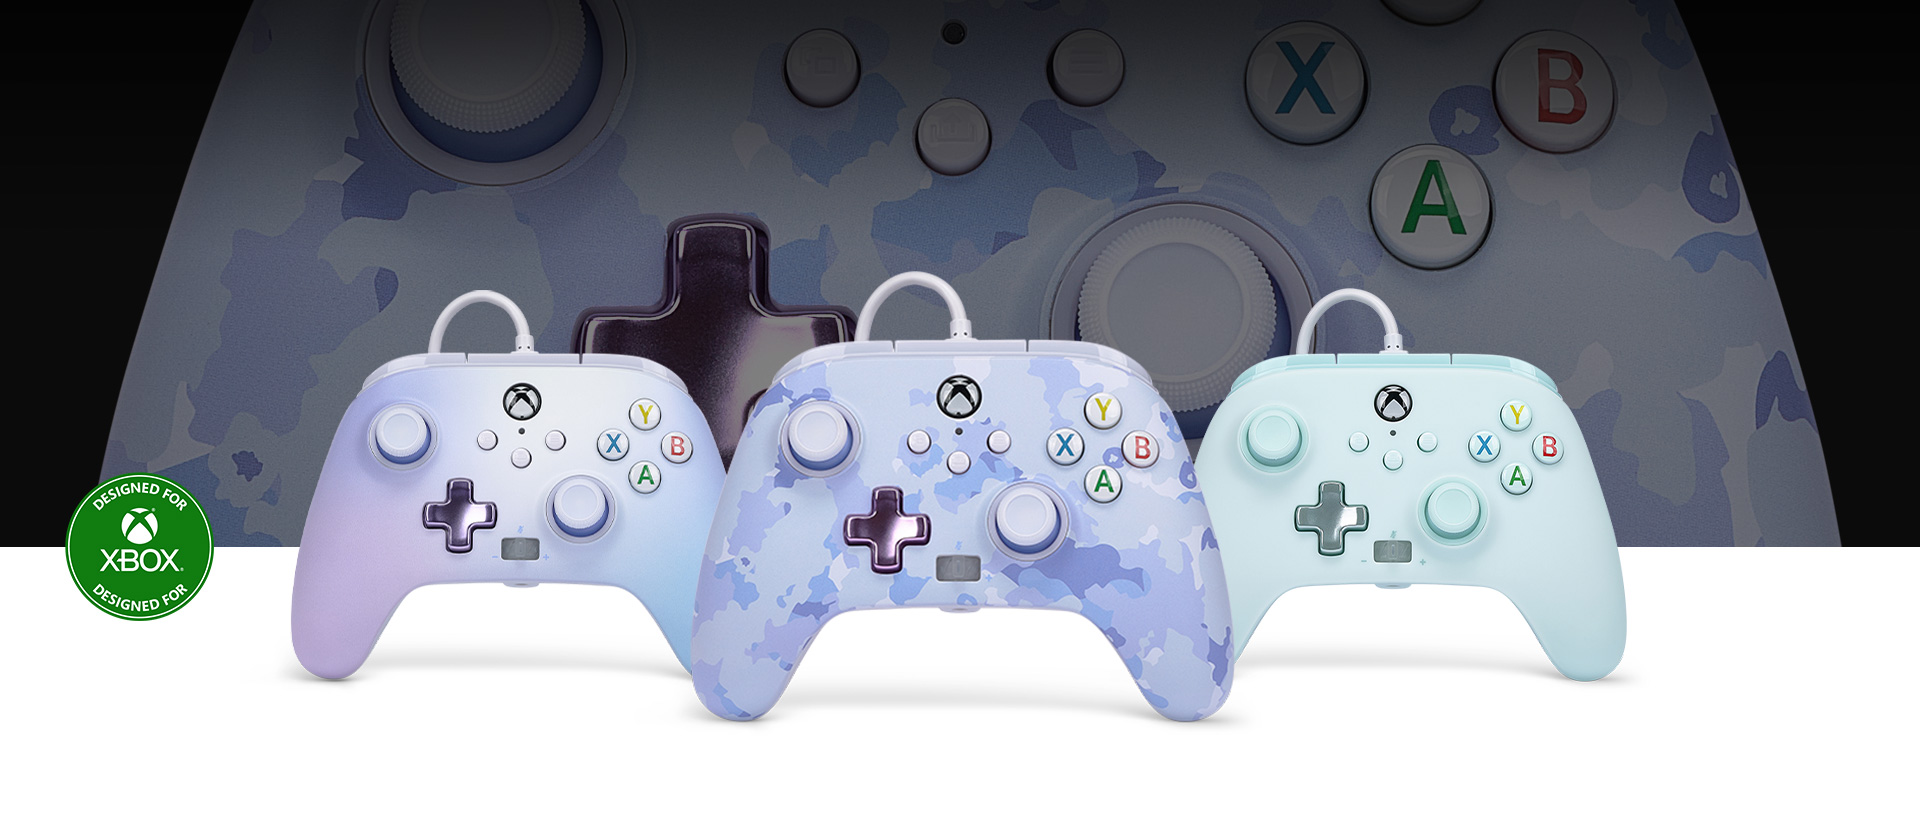 Logo Conçu pour Xbox, manette camouflage violet à l’avant de manettes rêve pastel et bleu barbe à papa à côté